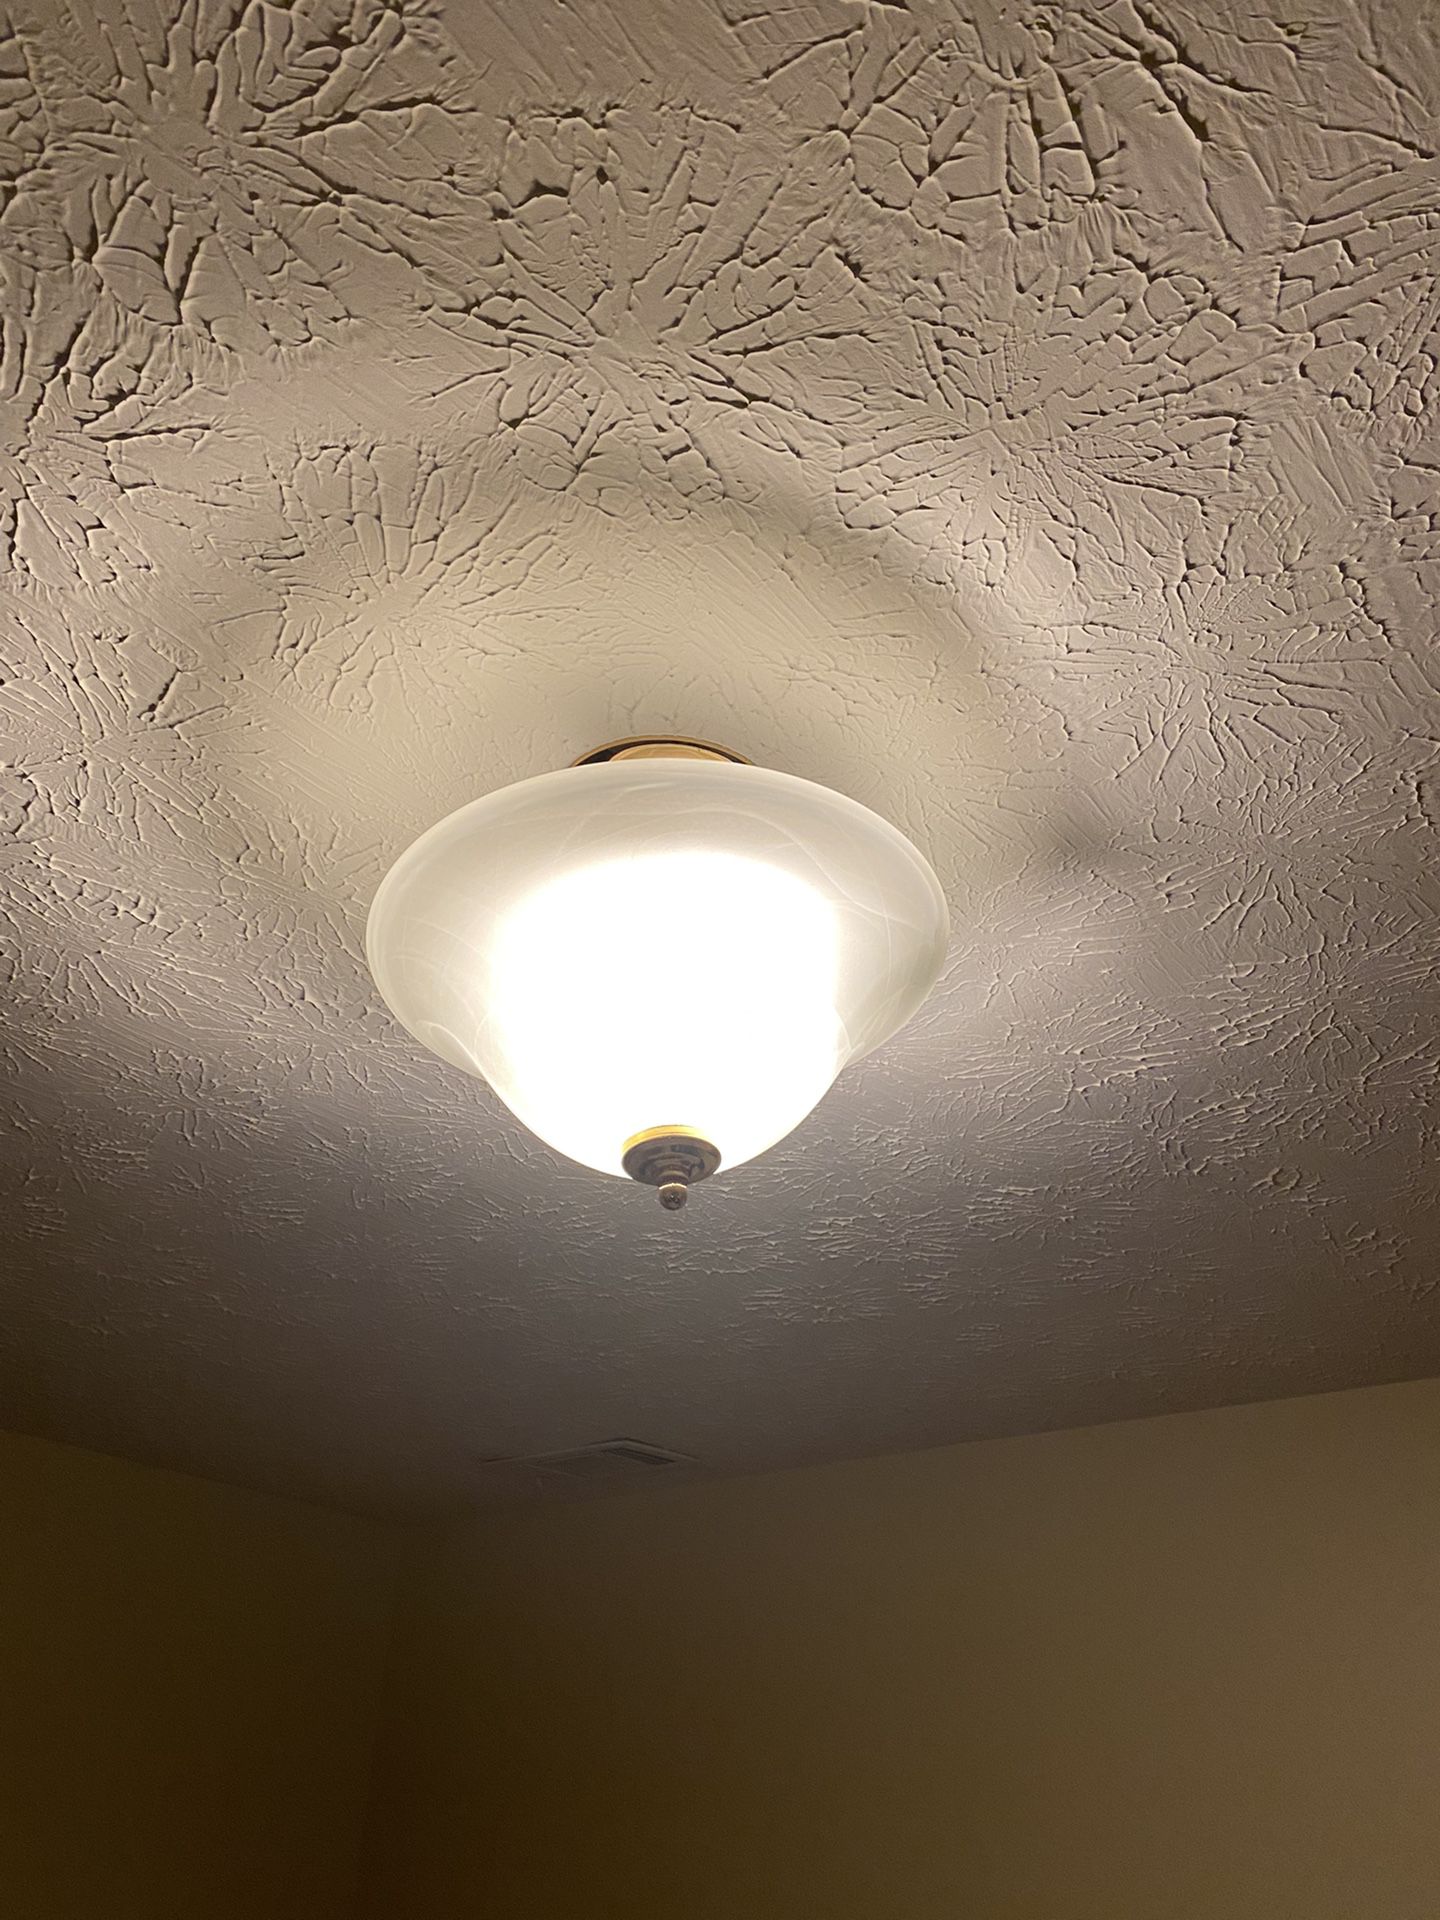 Ceiling light fixture